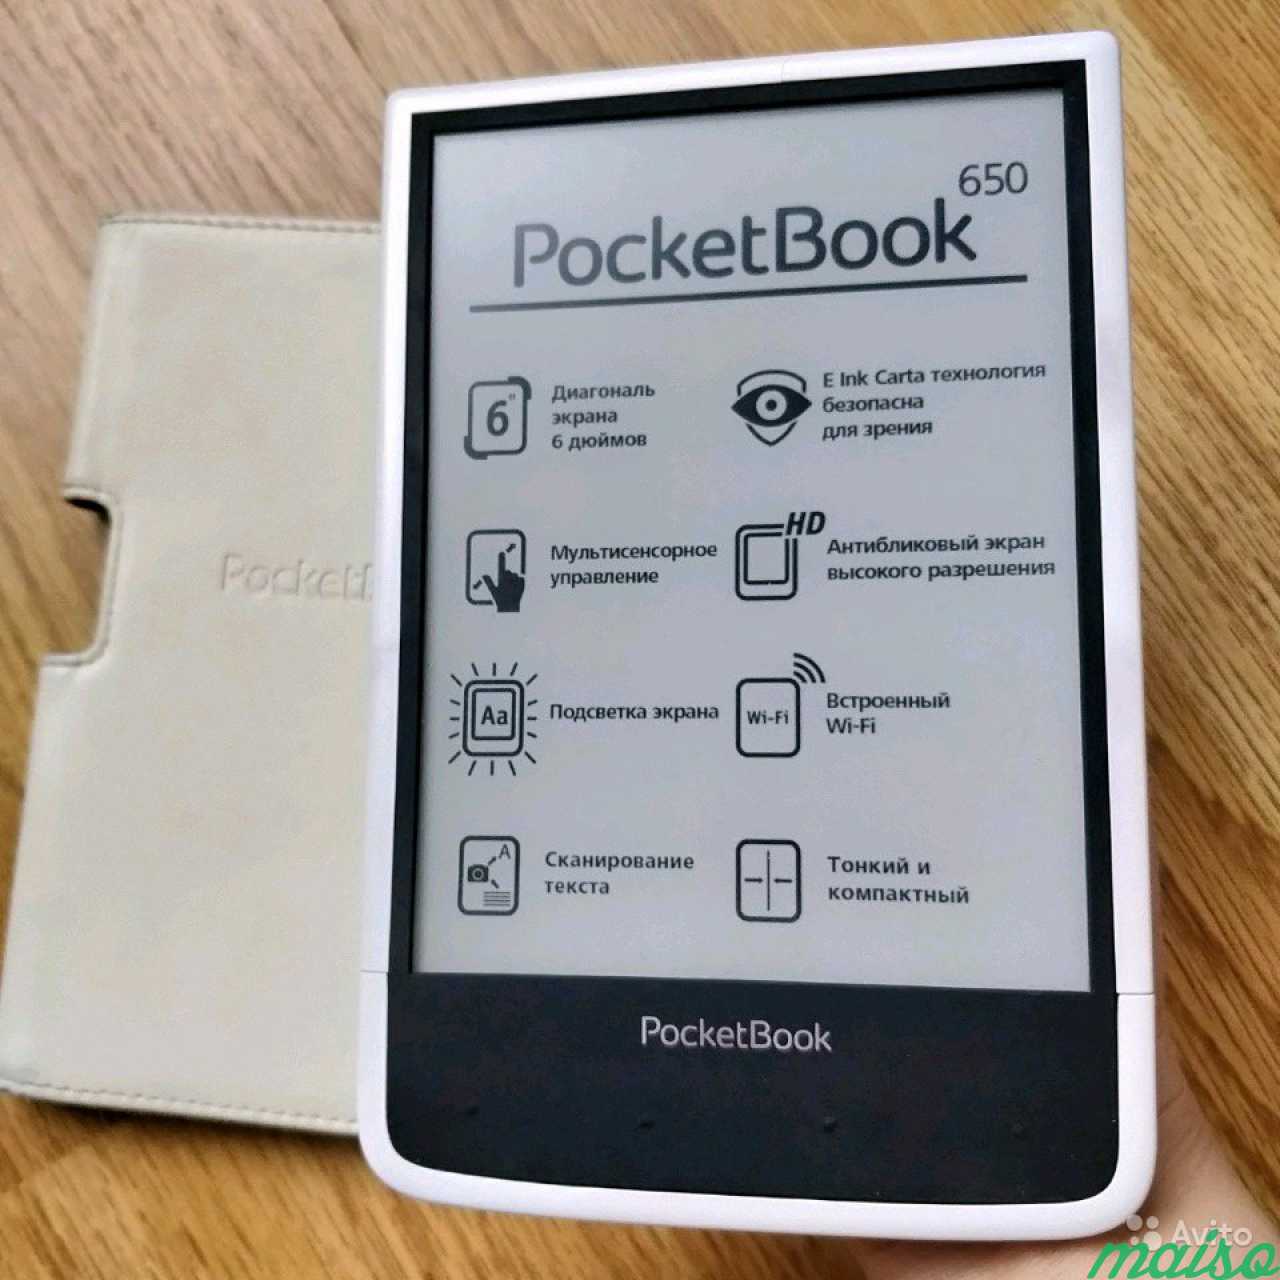 Pocketbook 650. Покетбук 650. Электронная книга POCKETBOOK 650. POCKETBOOK 650 подсветка. POCKETBOOK С подсветкой.